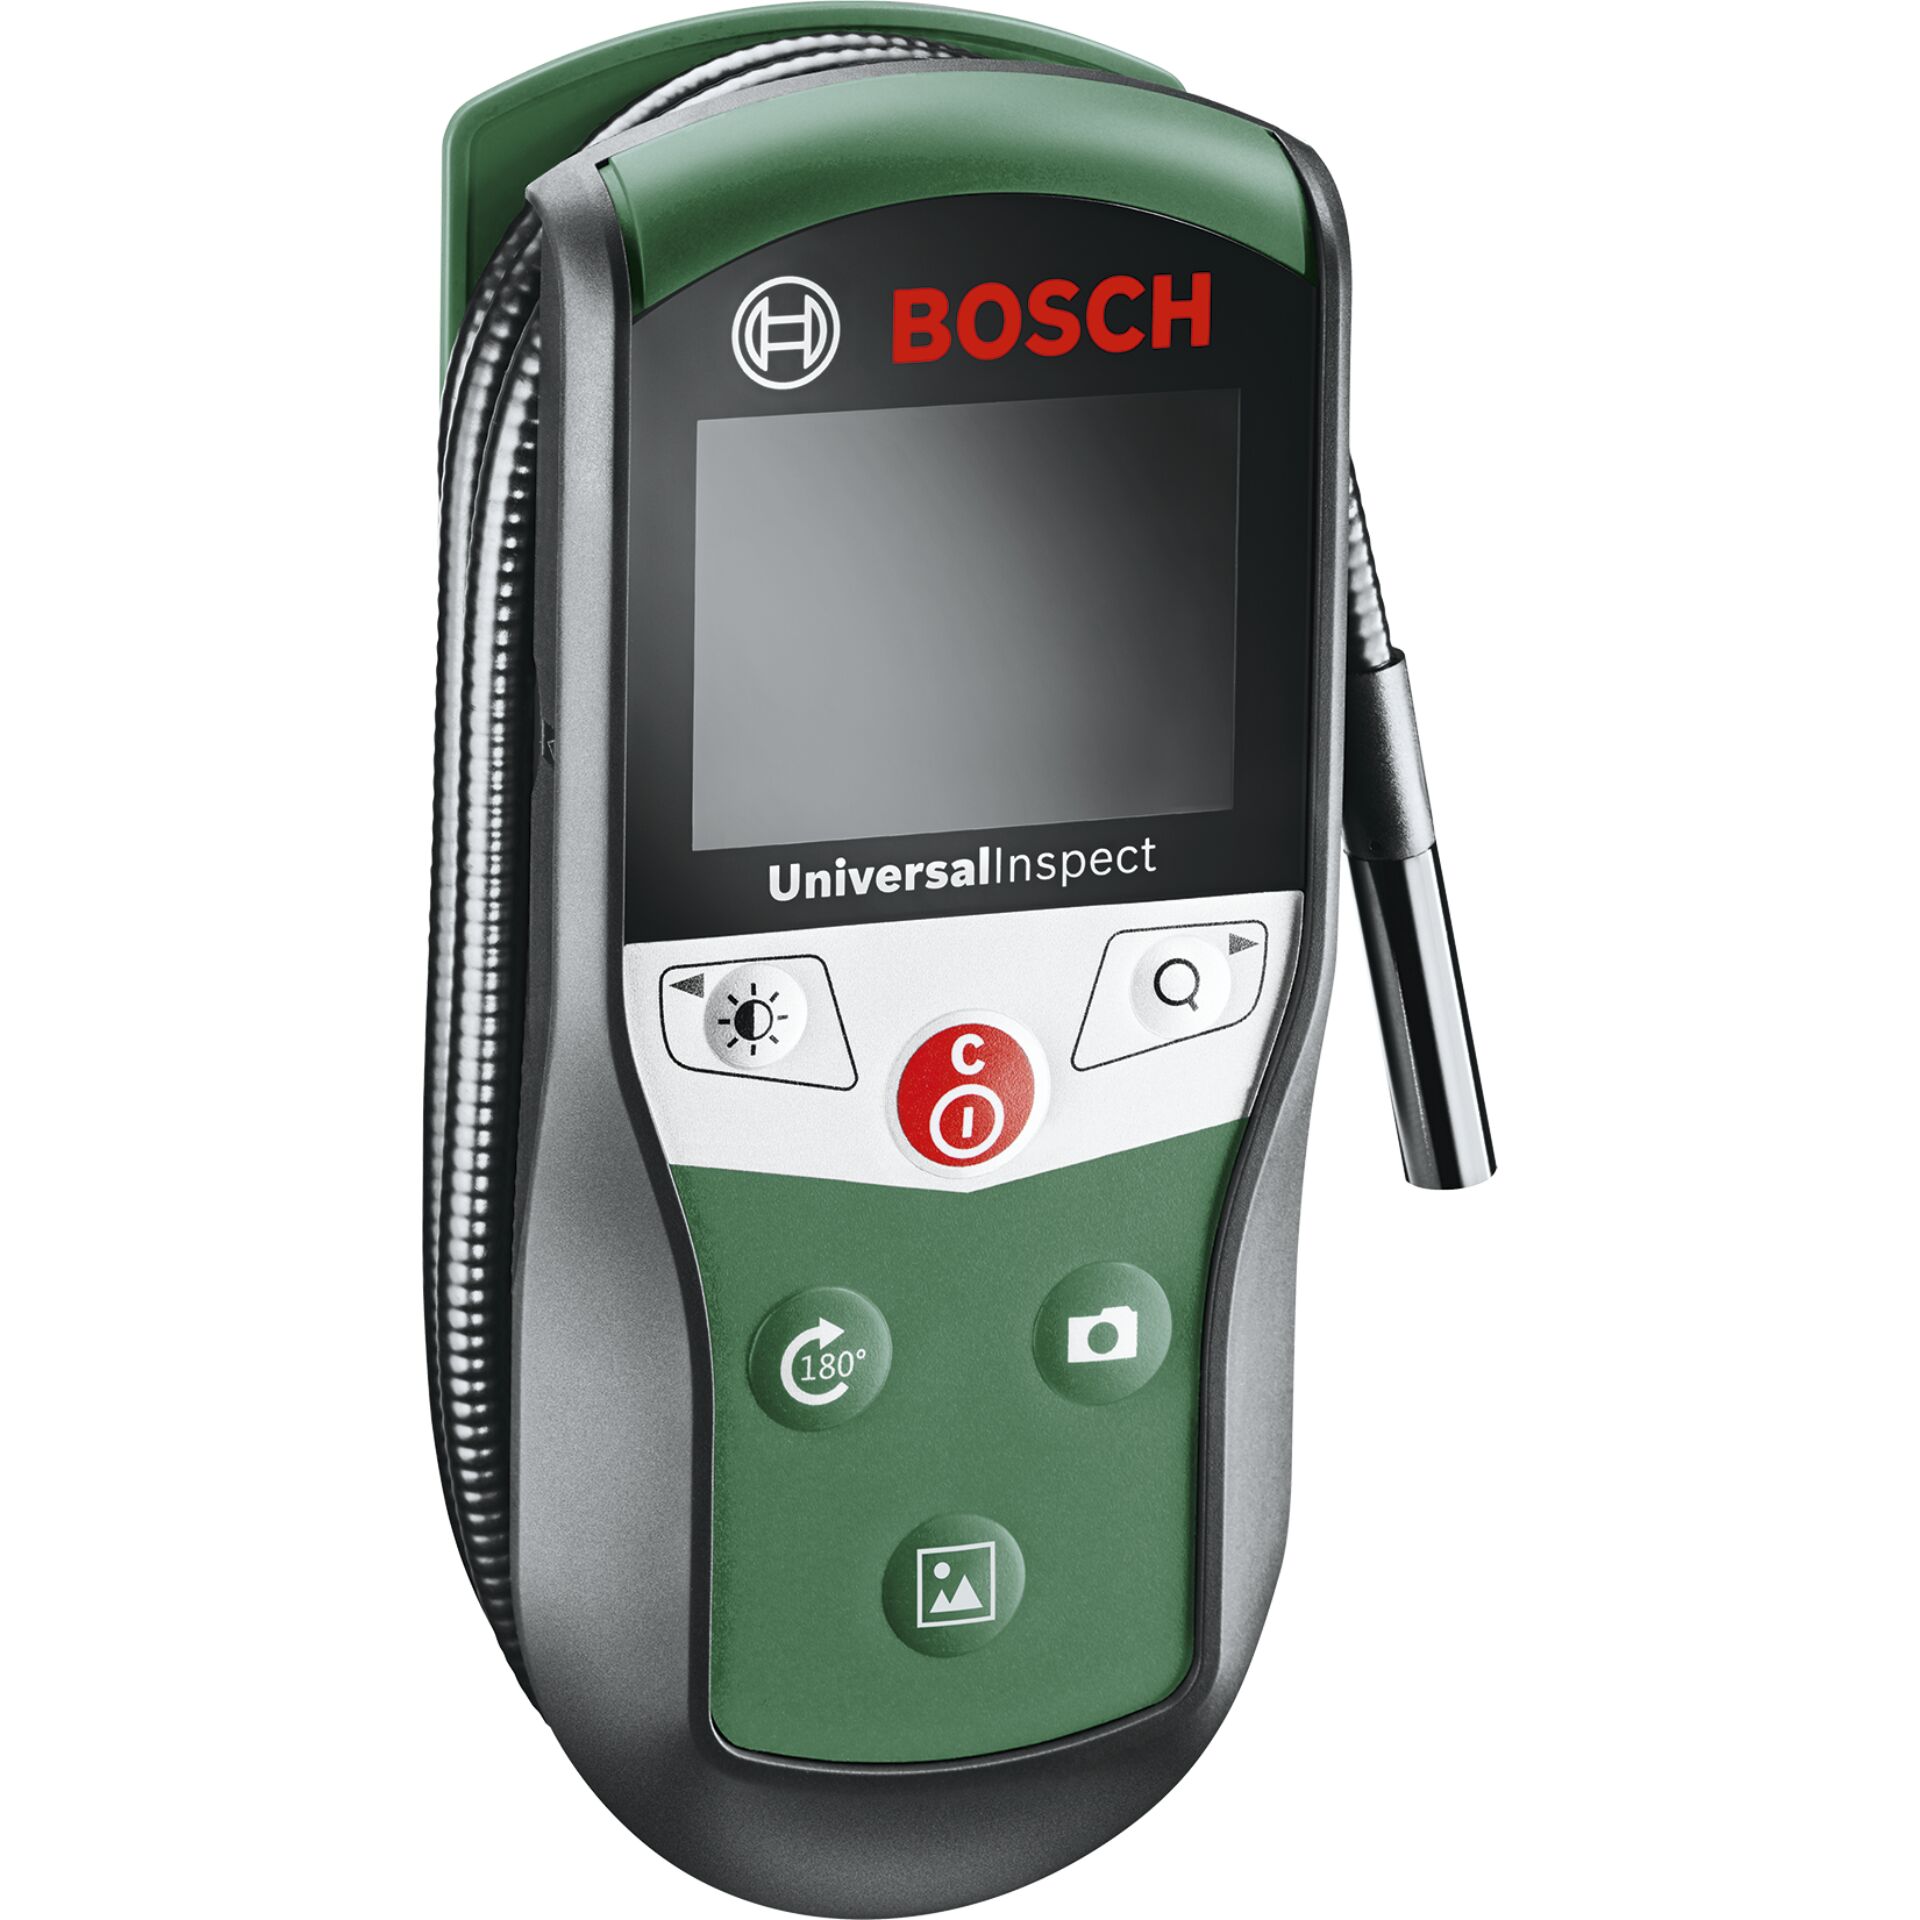 Bosch Universal Inspect